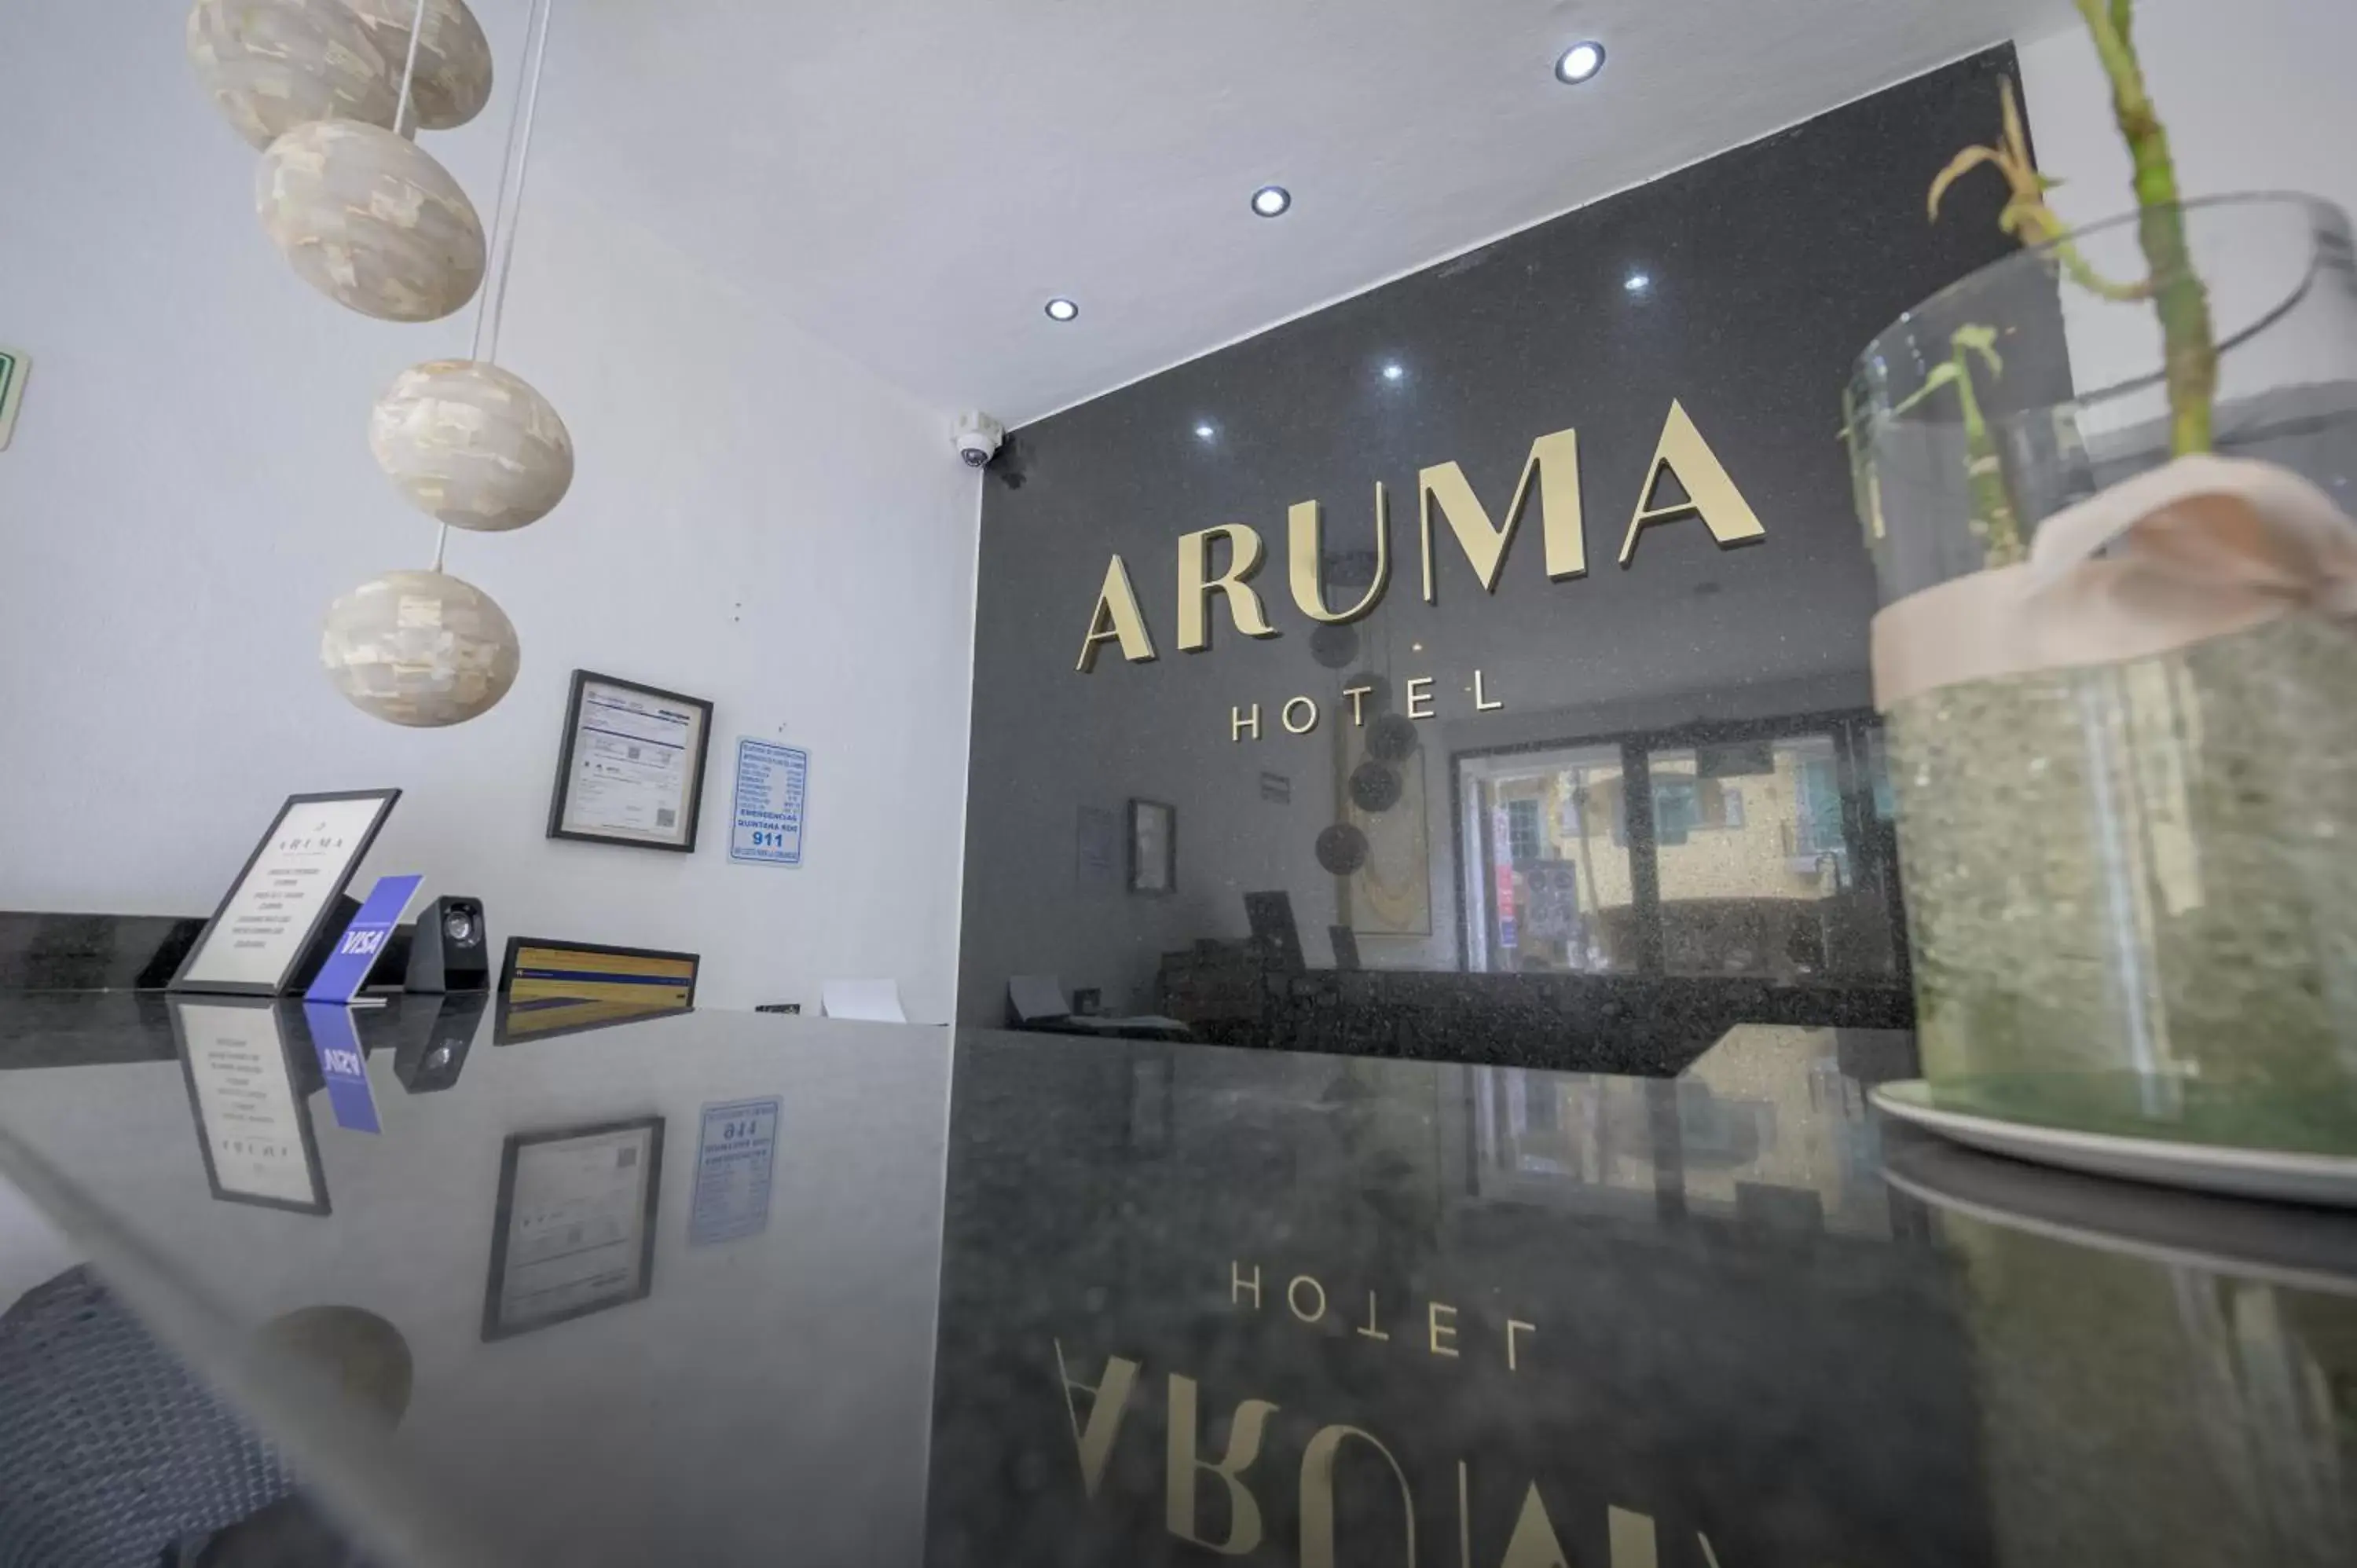 Lobby or reception in Aruma Hotel